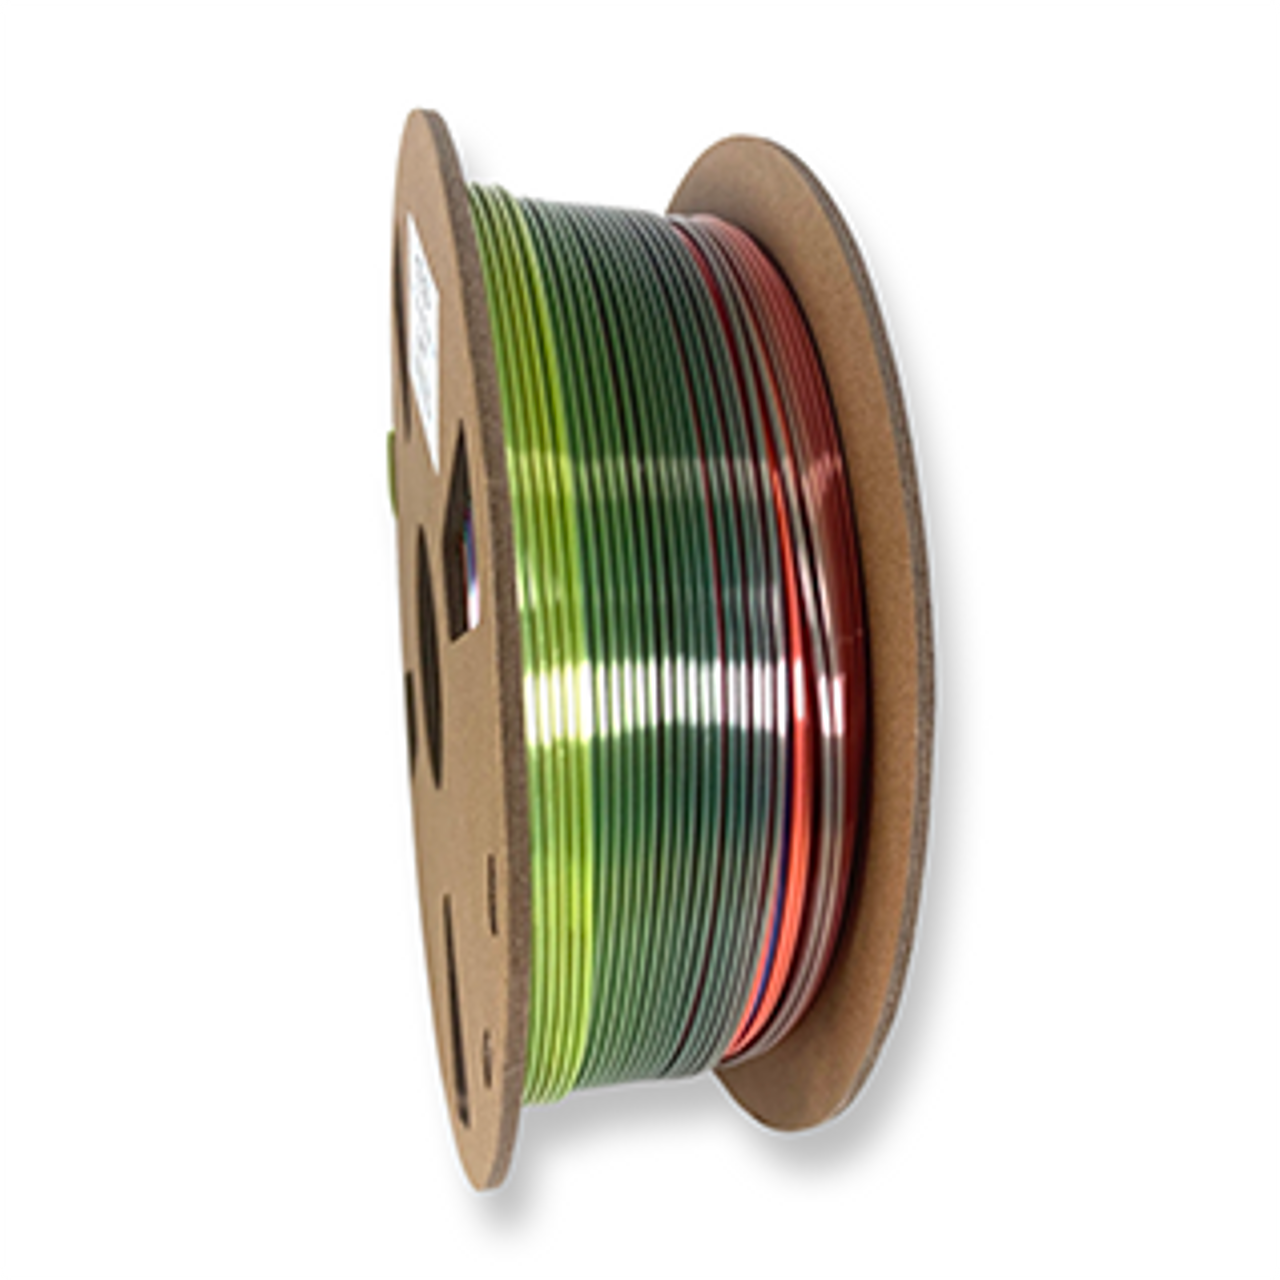 Fuse 3D Silk Rainbow B 3D Printing Filament